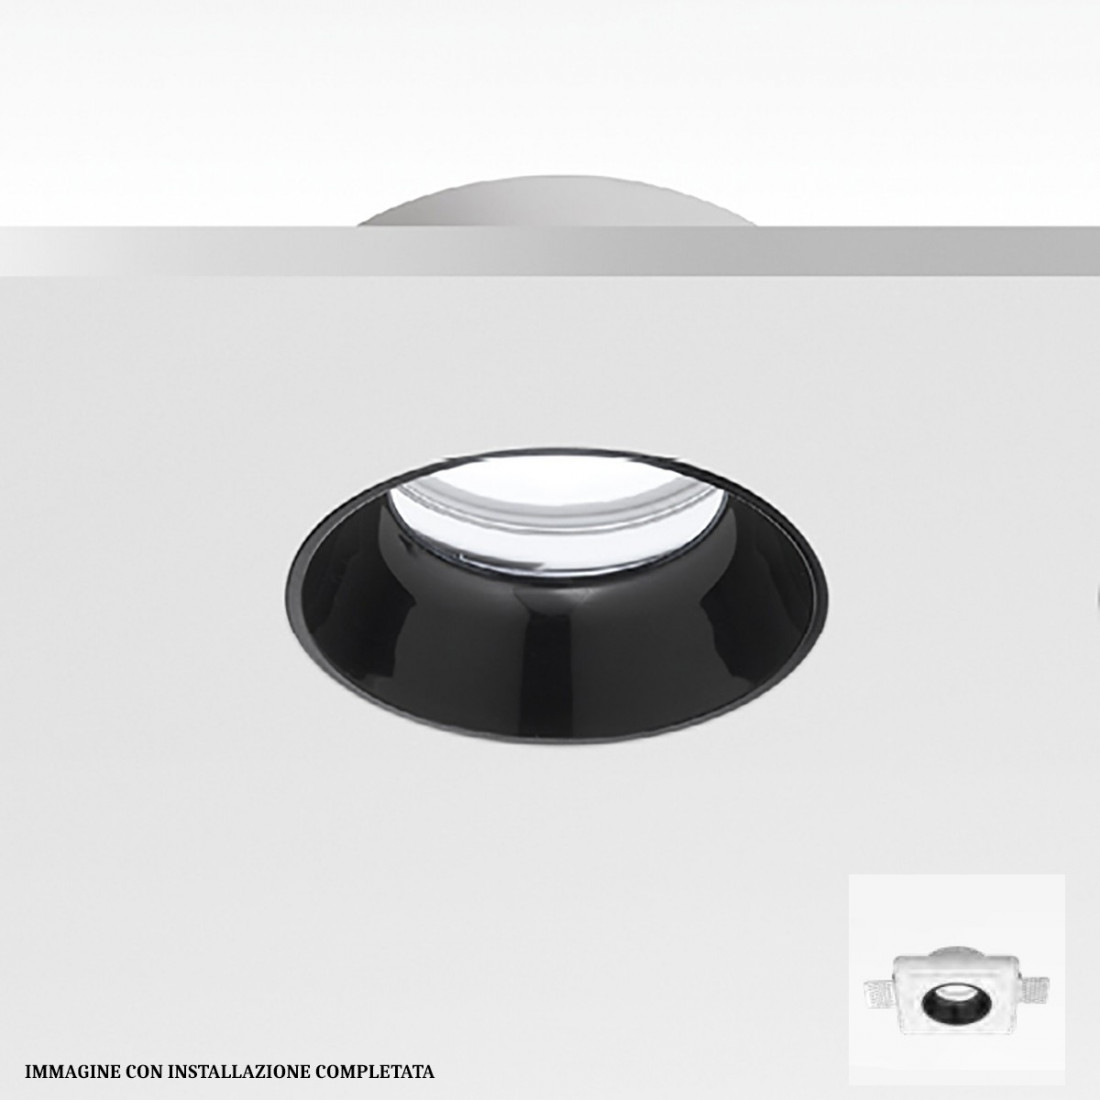 Faretto incasso GE-GFA633 GU10 LED IP20 moderno gesso cromo lucido nero lampada soffitto tondo cartongesso interno